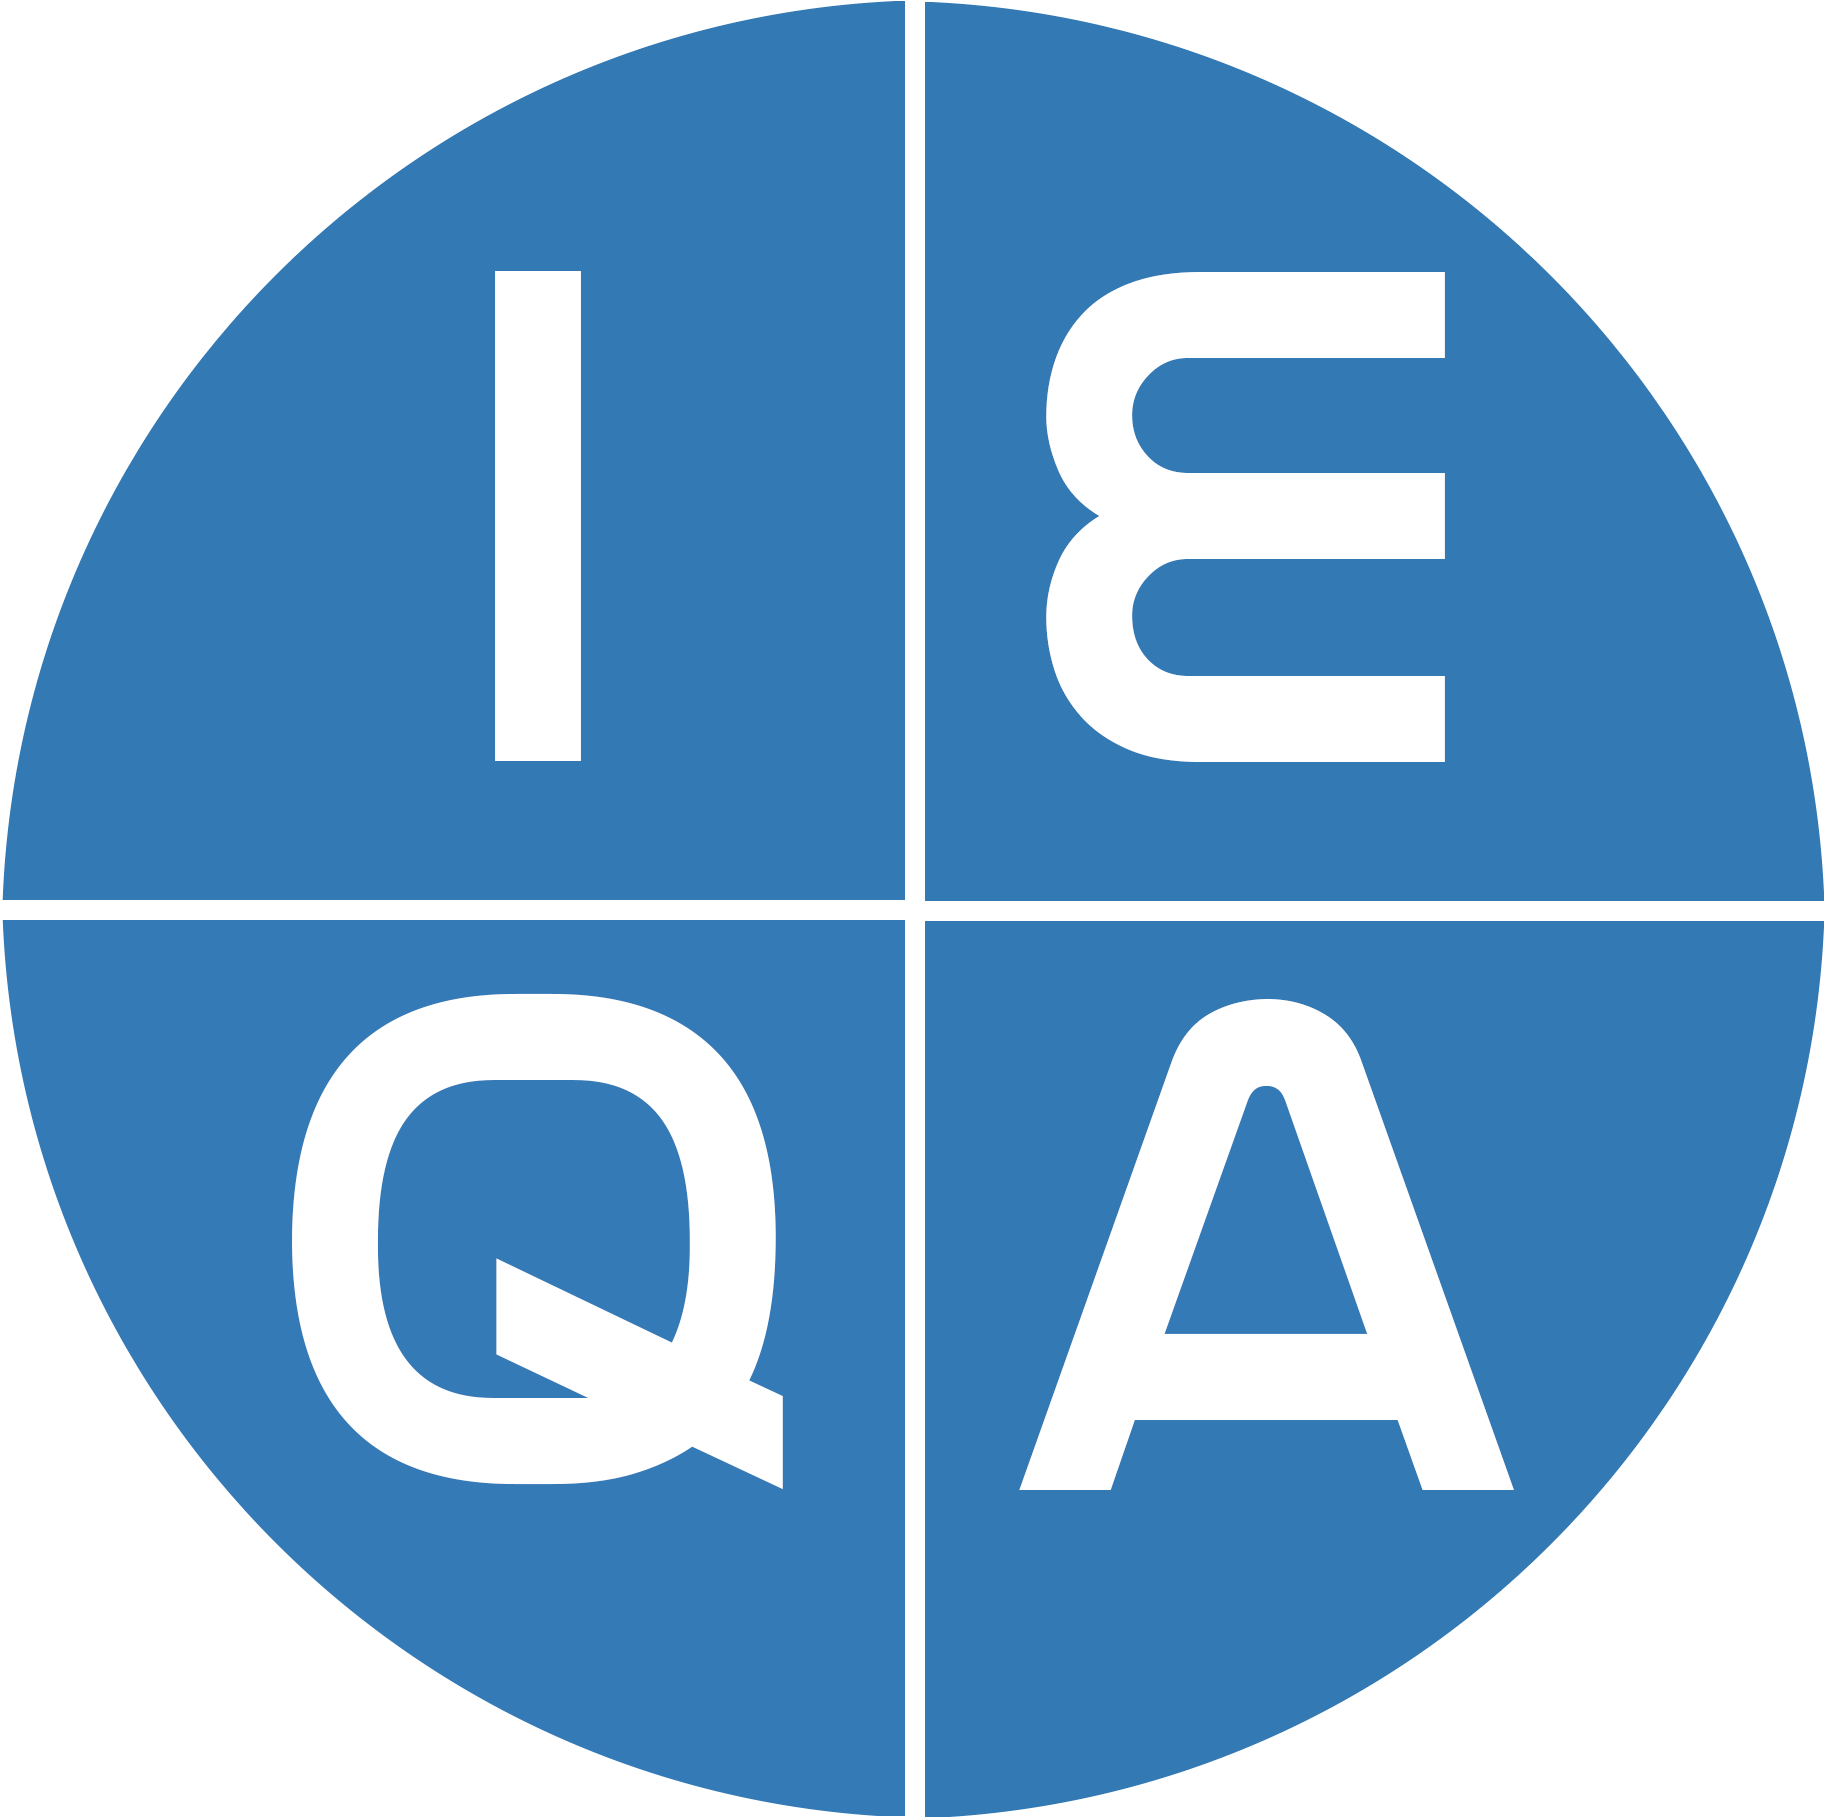 IEQA - logo.